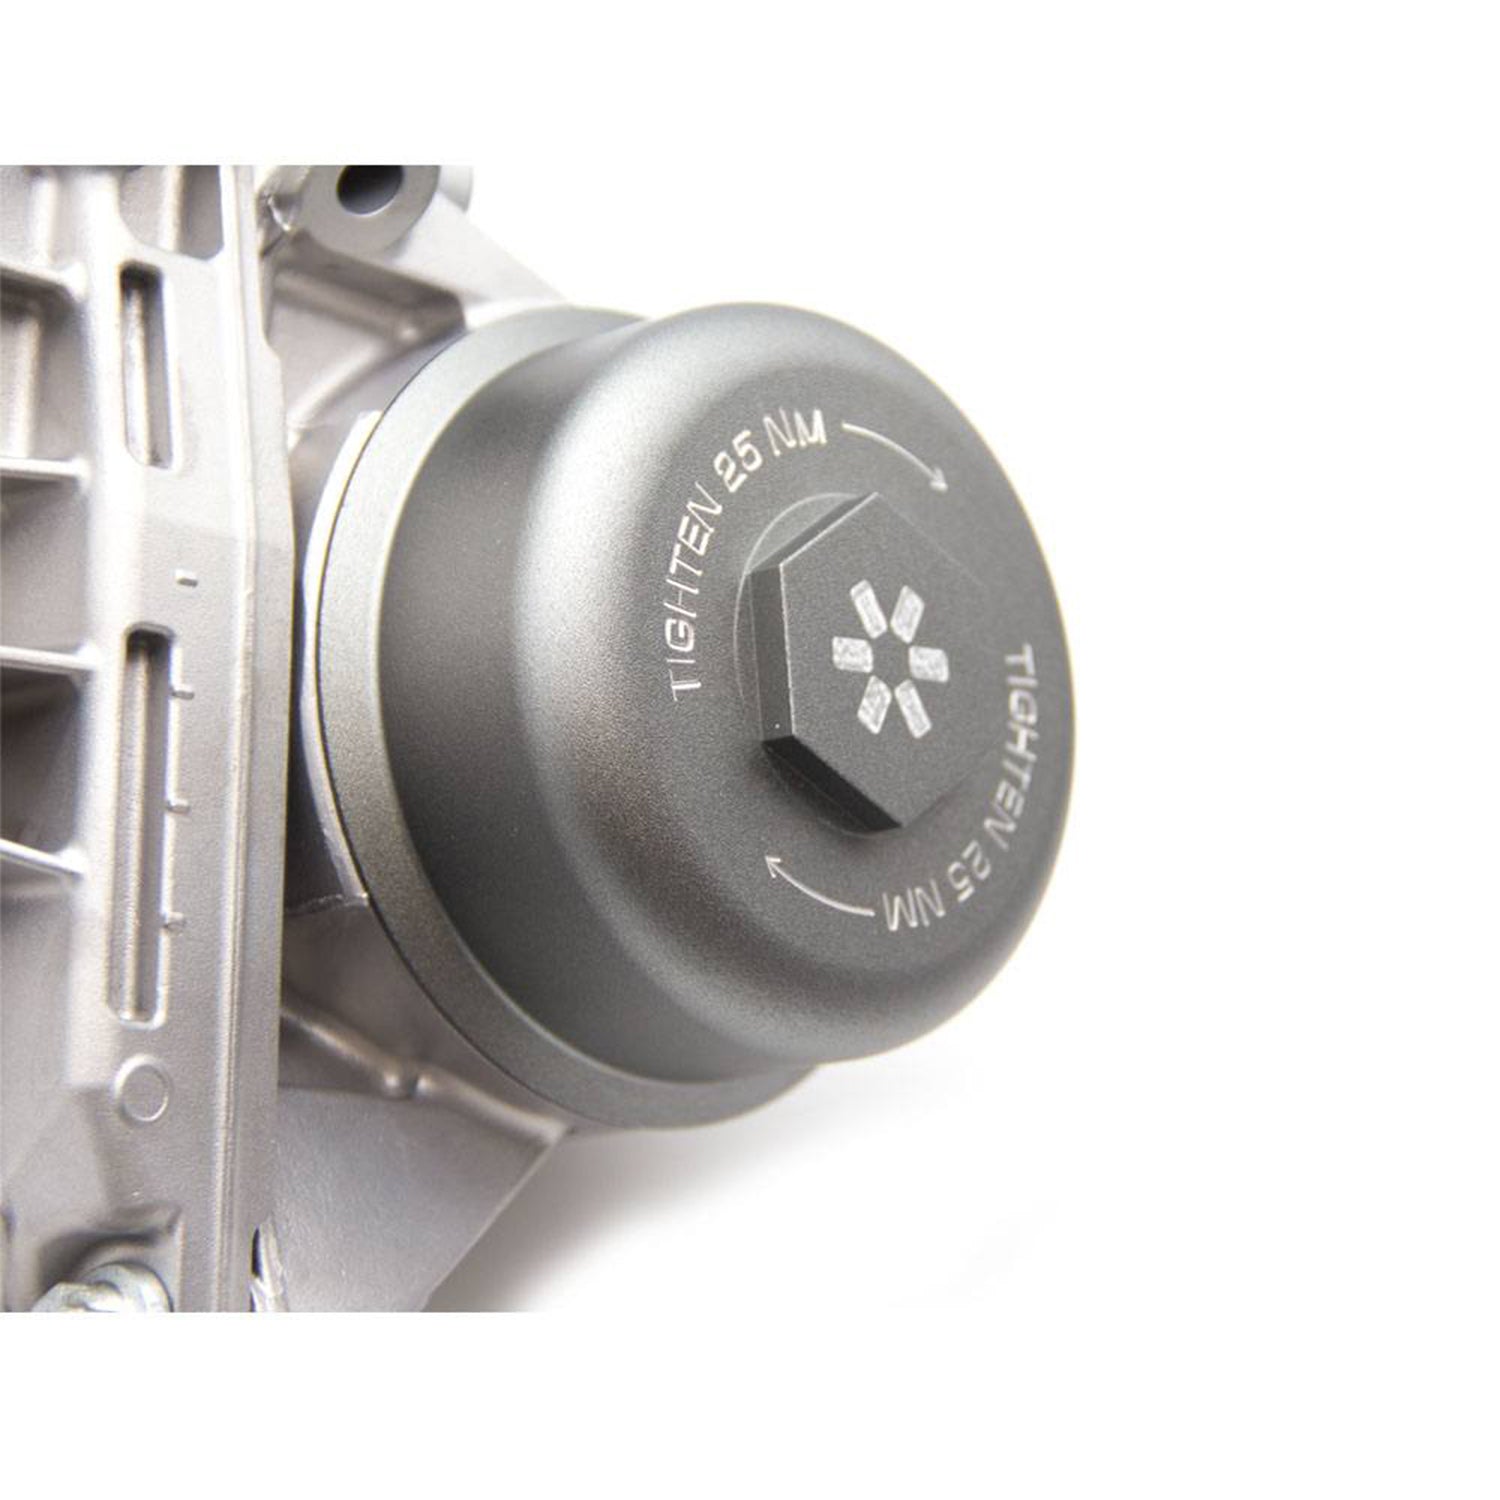 Airtec Motorsport BMW Oil Filter Housing Cap (N20/N52/N54/N55/S55)-R44 Performance